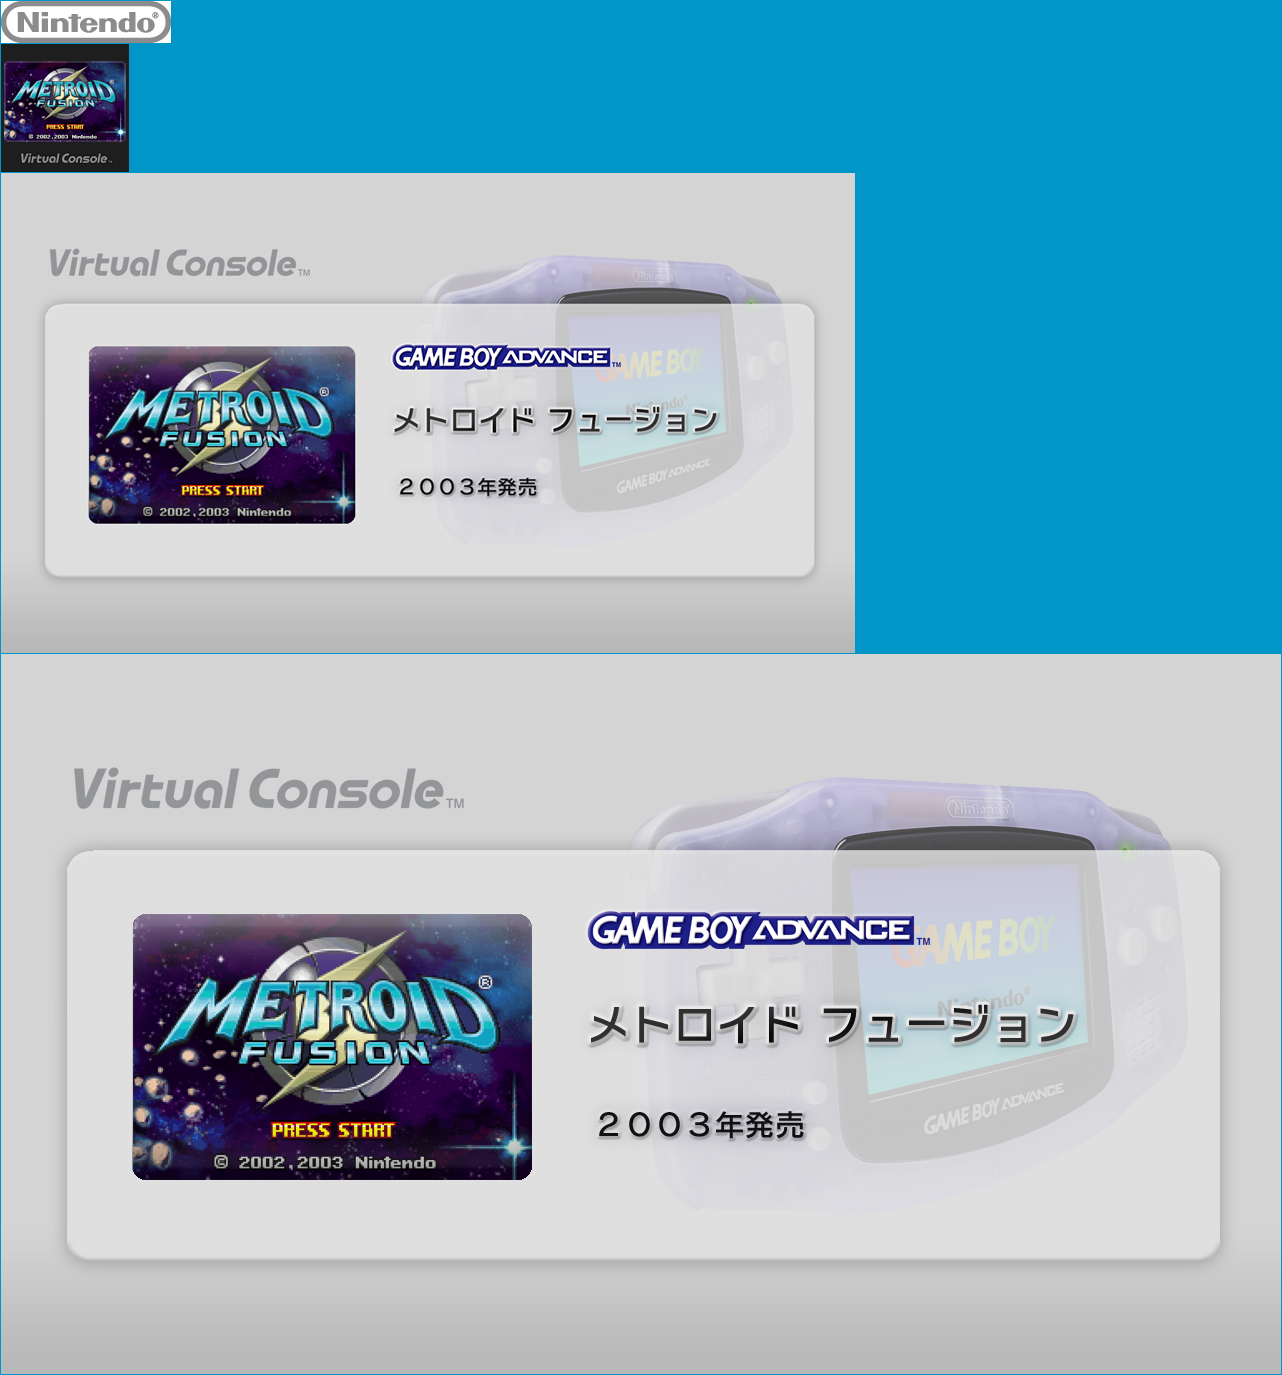 Virtual Console - Metroid Fusion